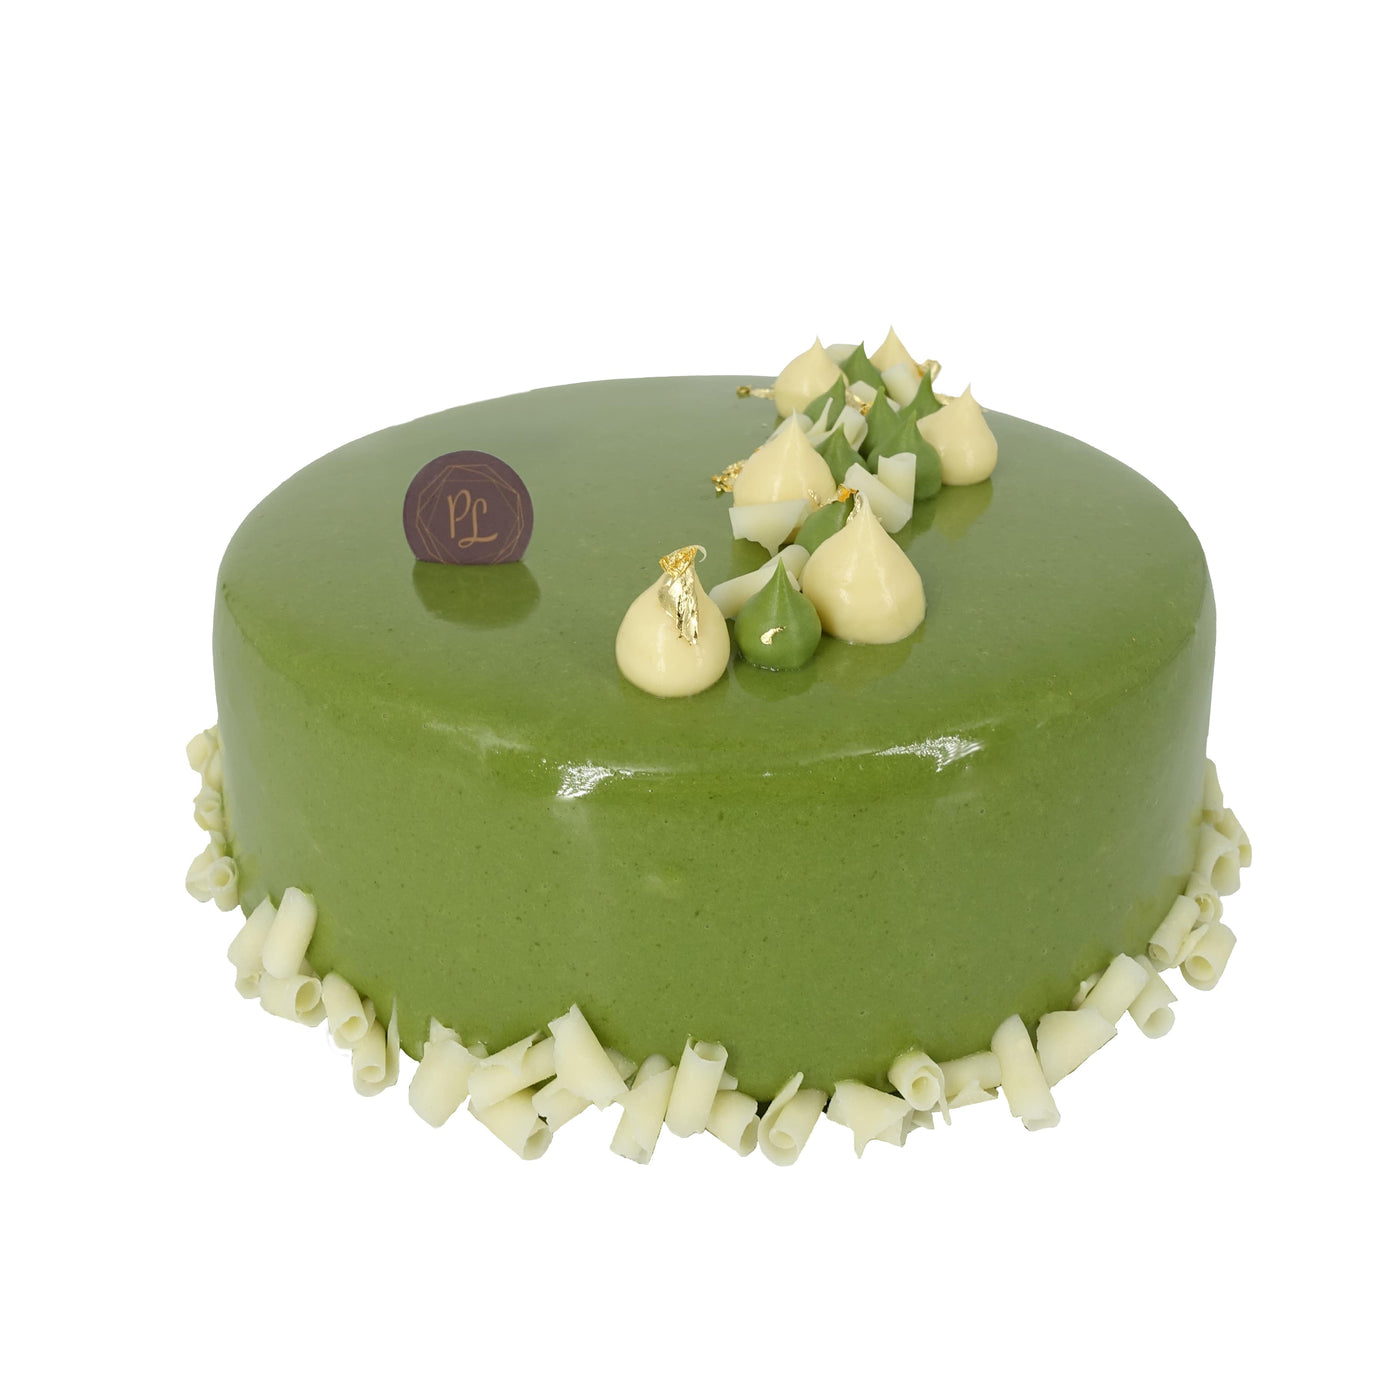 抹茶柚子蛋糕 - 分享蛋糕 Matcha-Yuzu Cake - Joy Cake